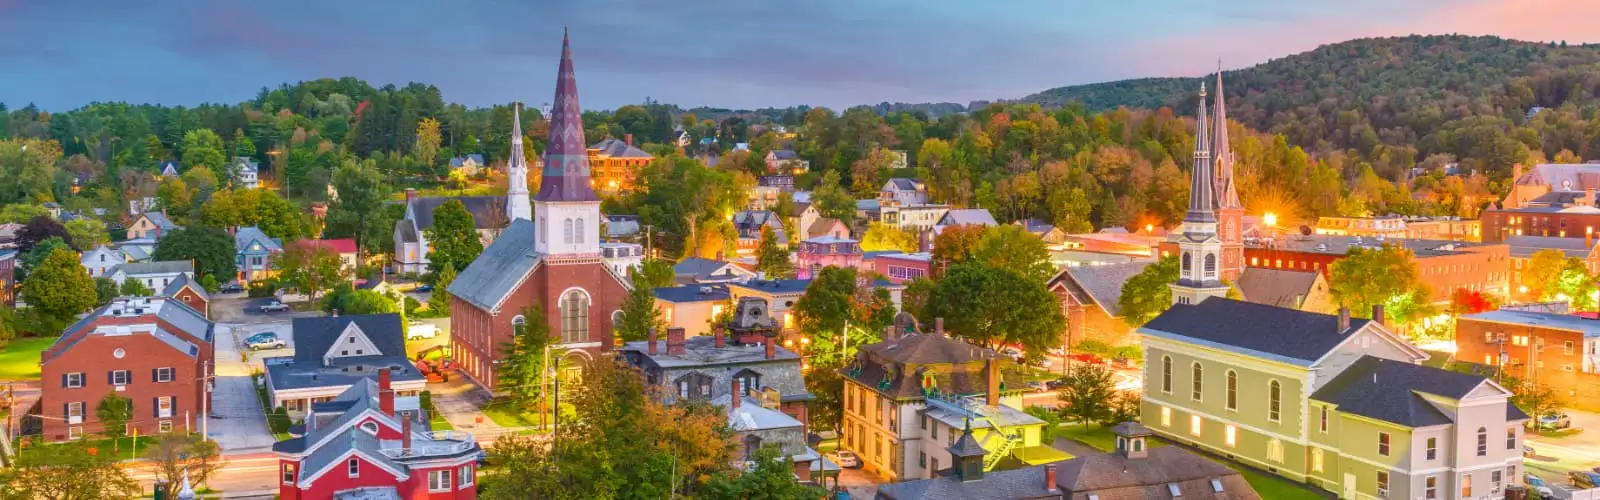 Montpelier, Vermont, USA town skyline. Find Vermont Insurance.